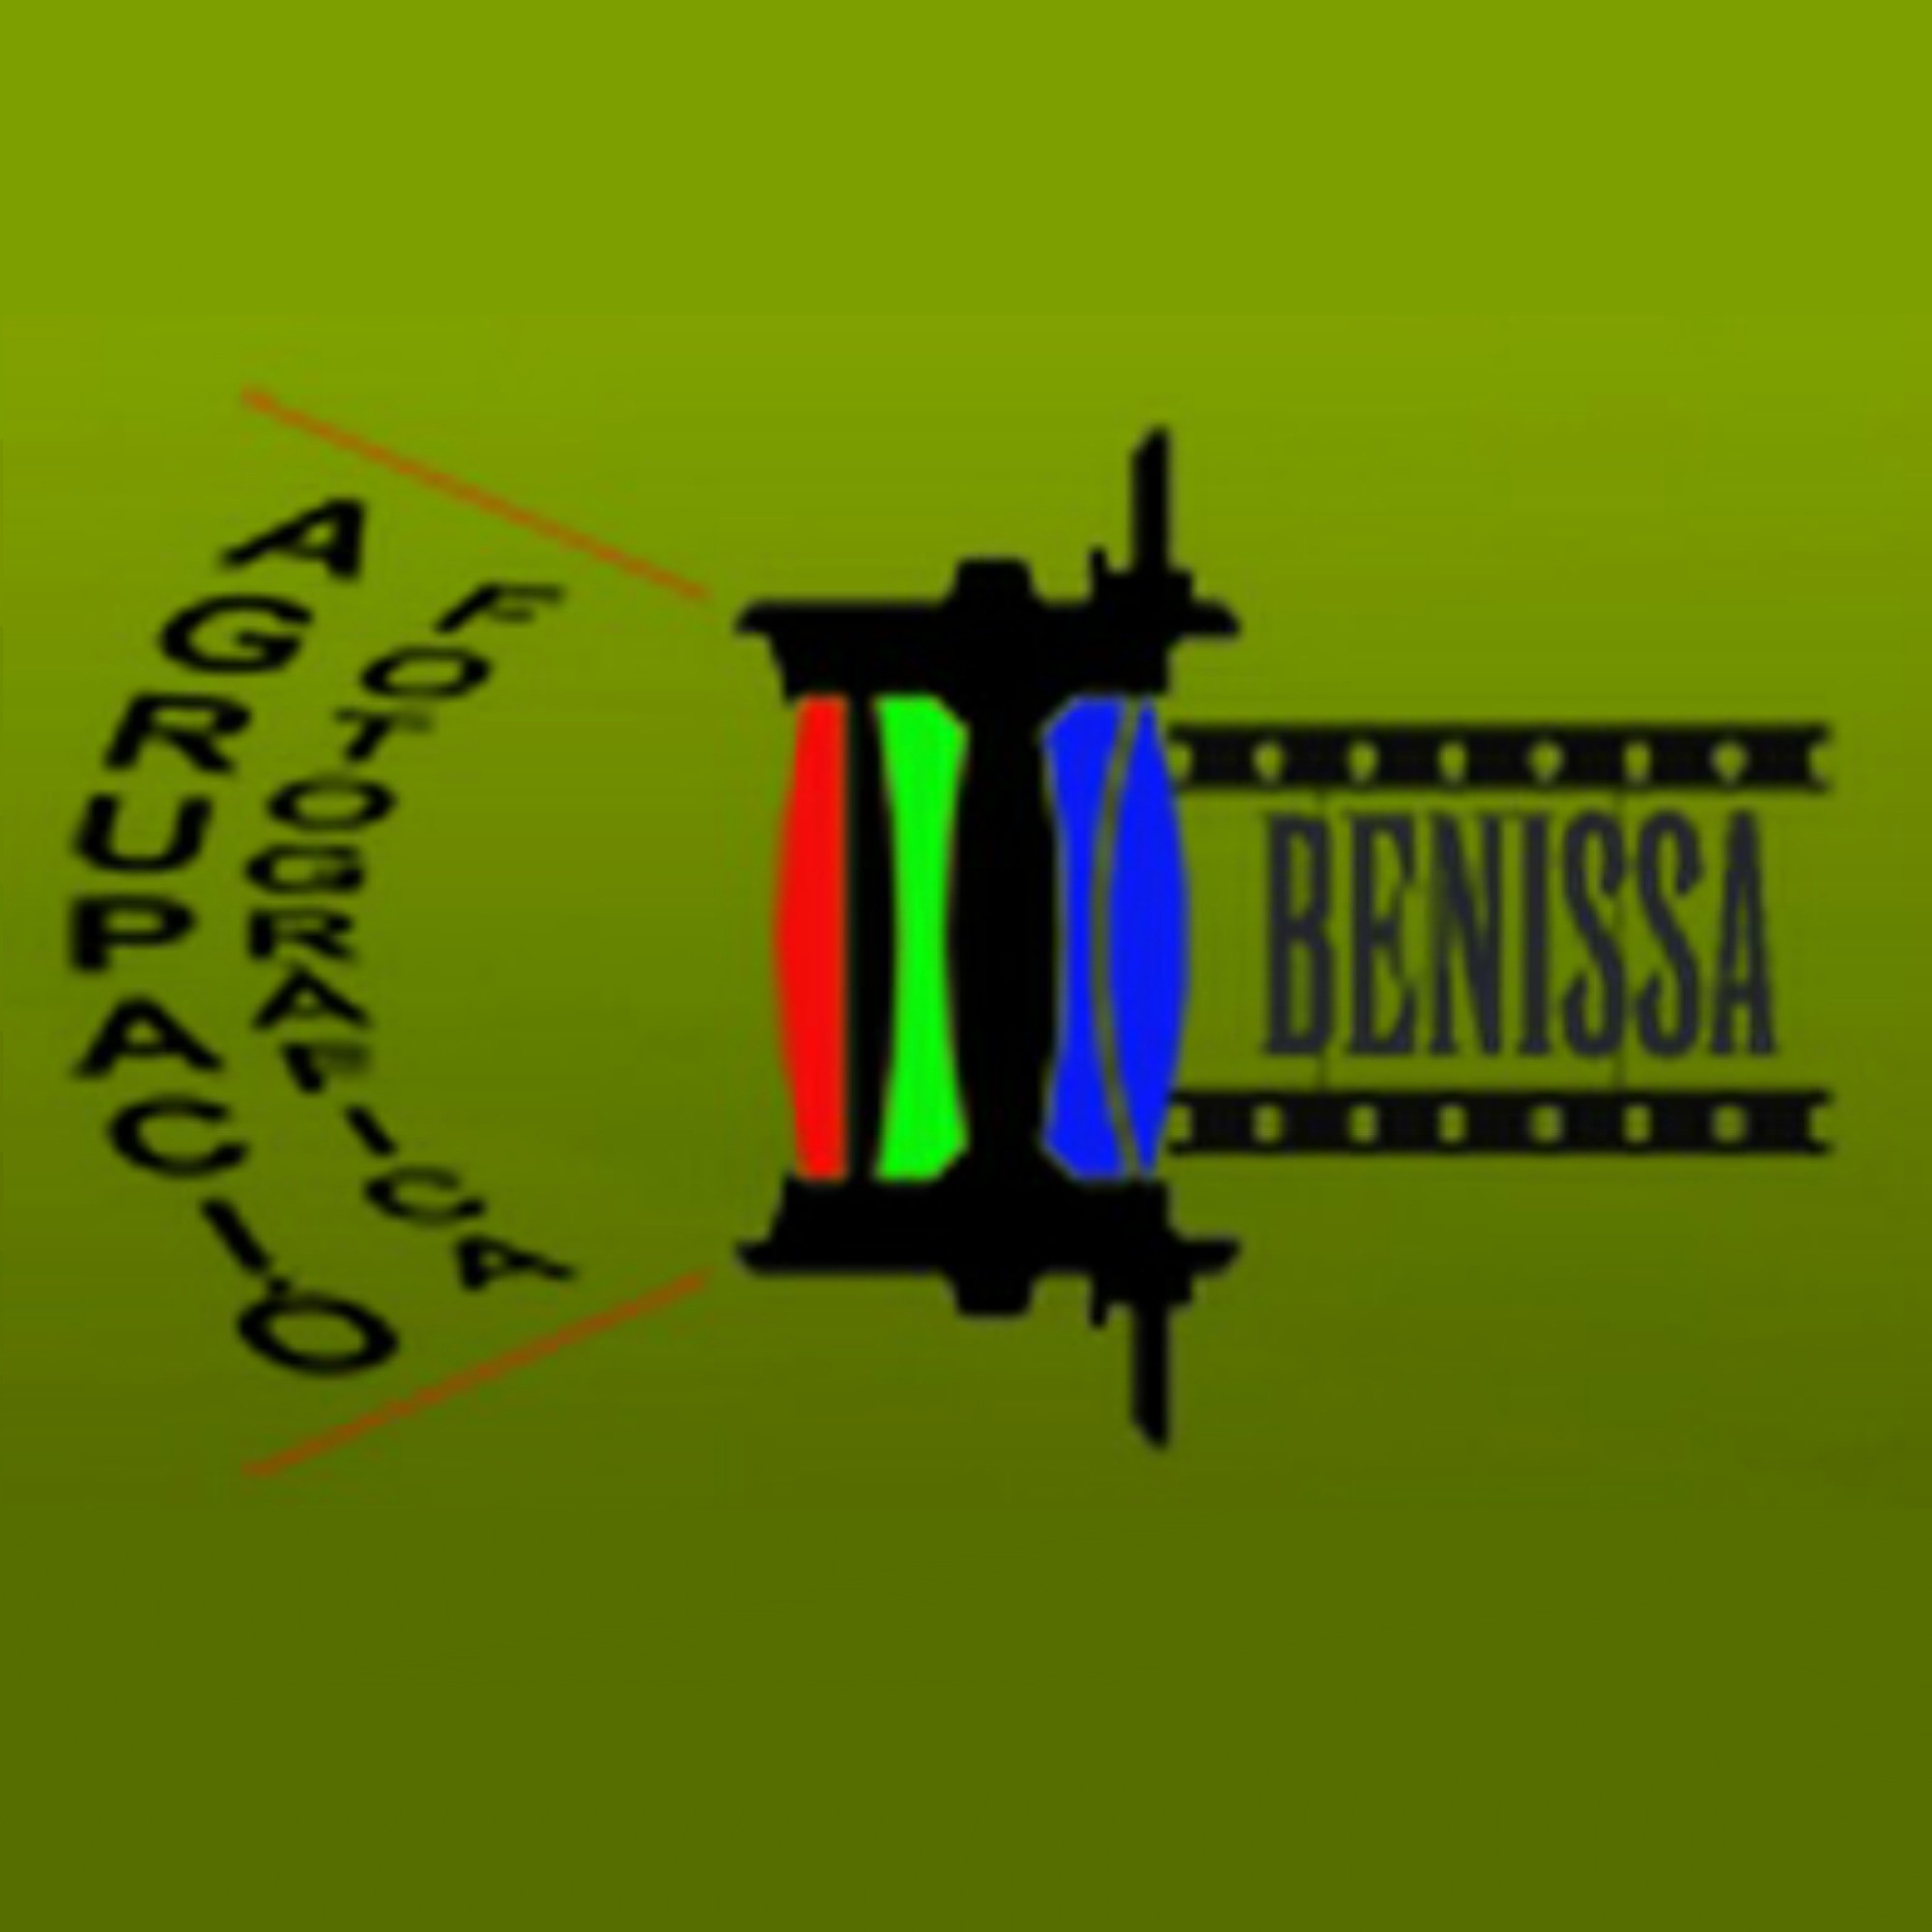 Photograph association Benissa